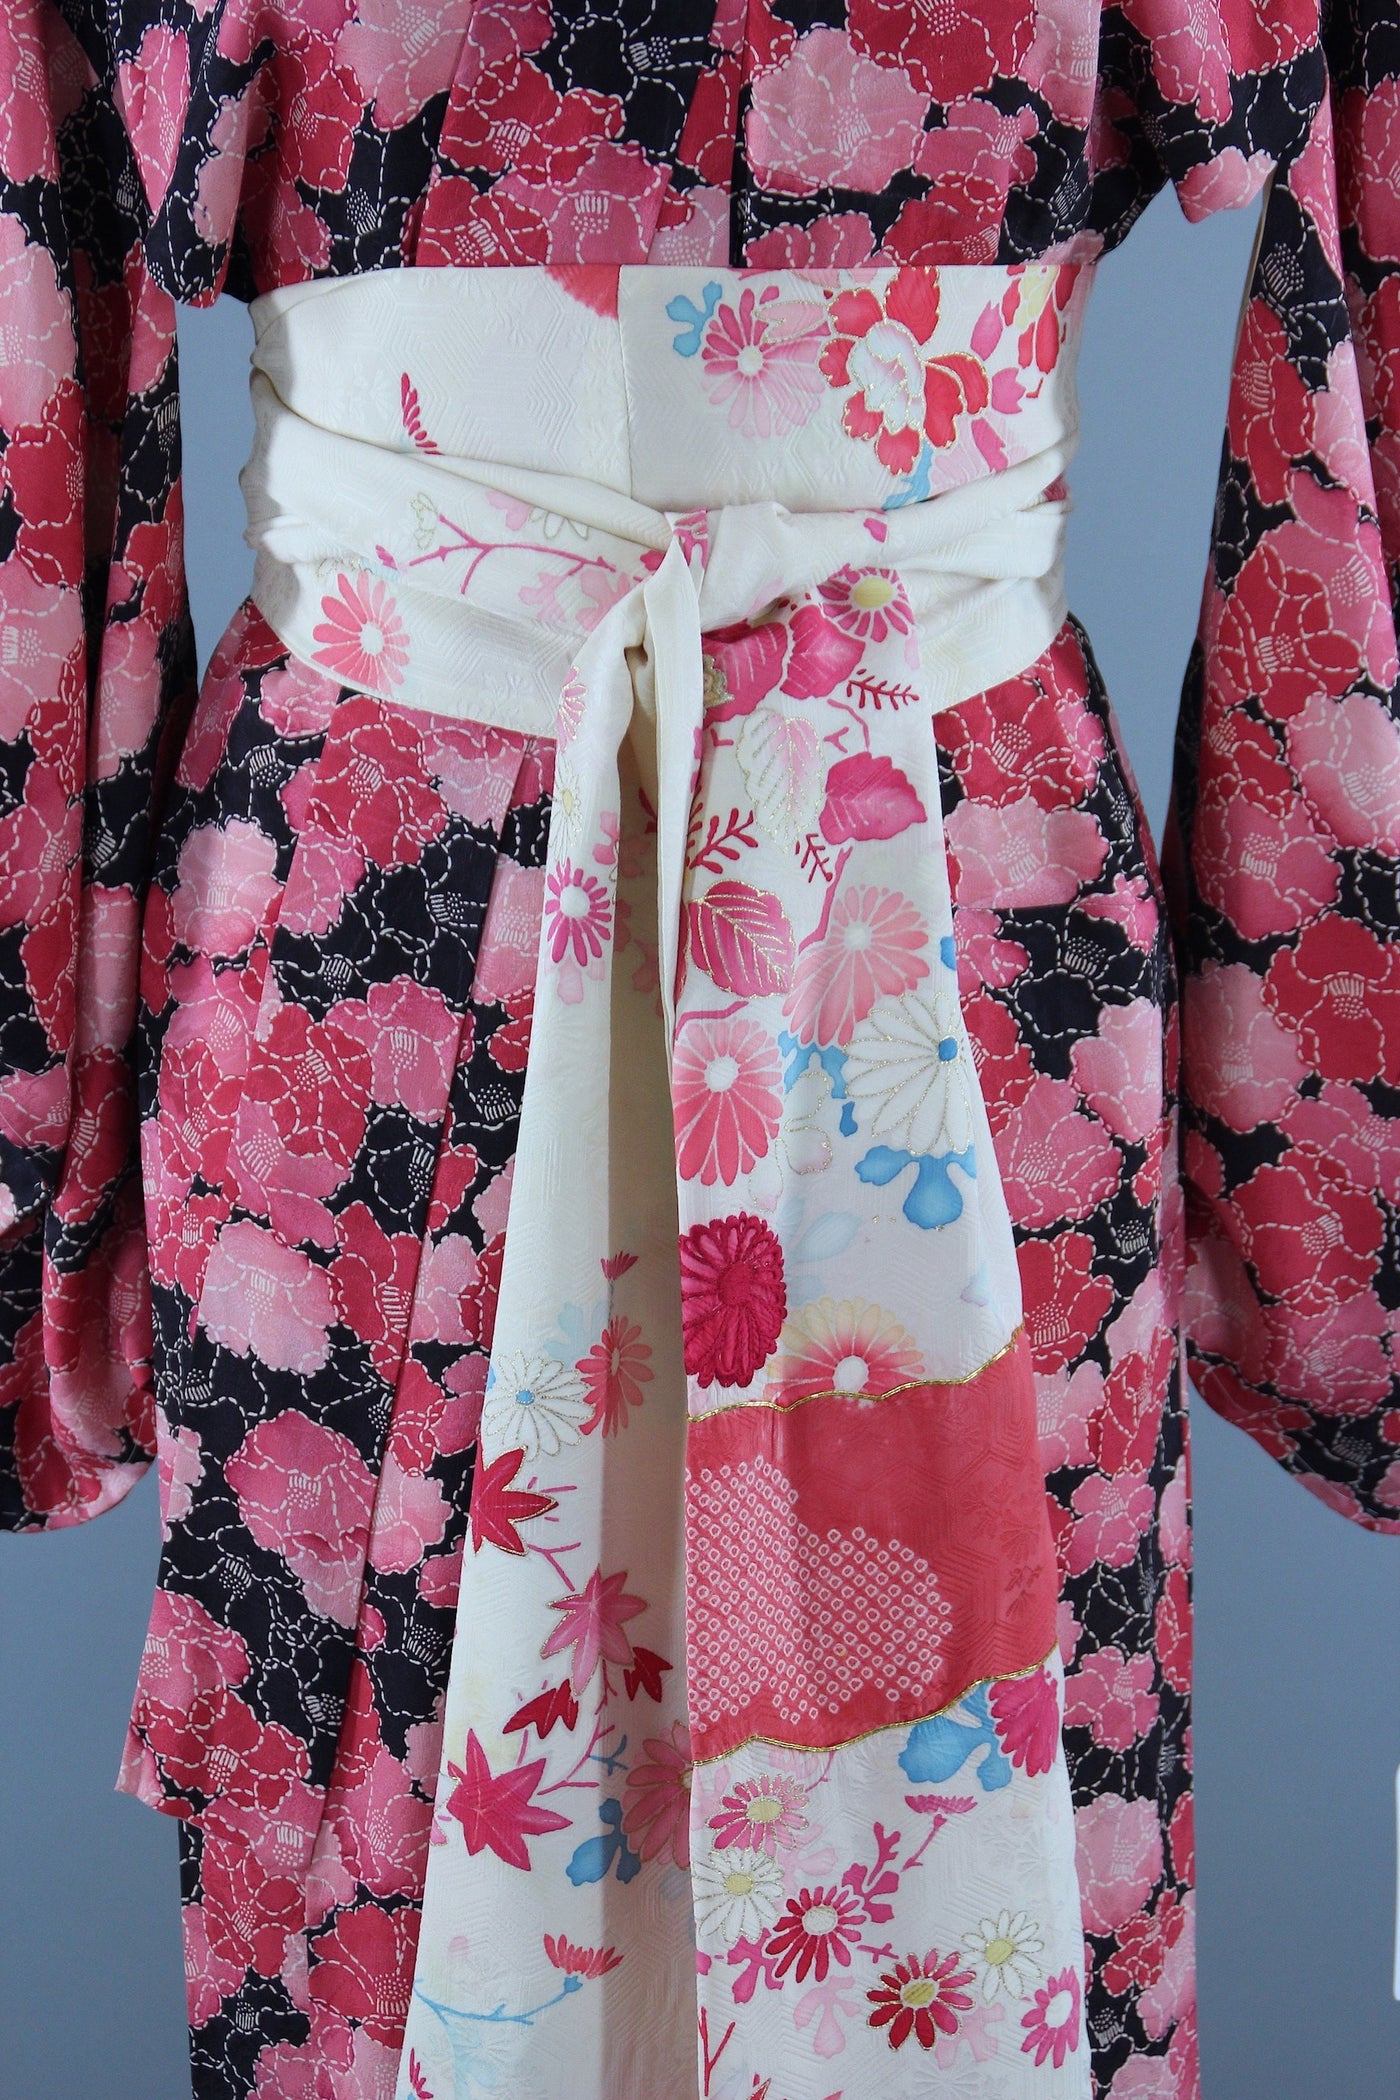 1940s Vintage Silk Kimono Robe / Pink & Black Floral Sashiko Print - ThisBlueBird